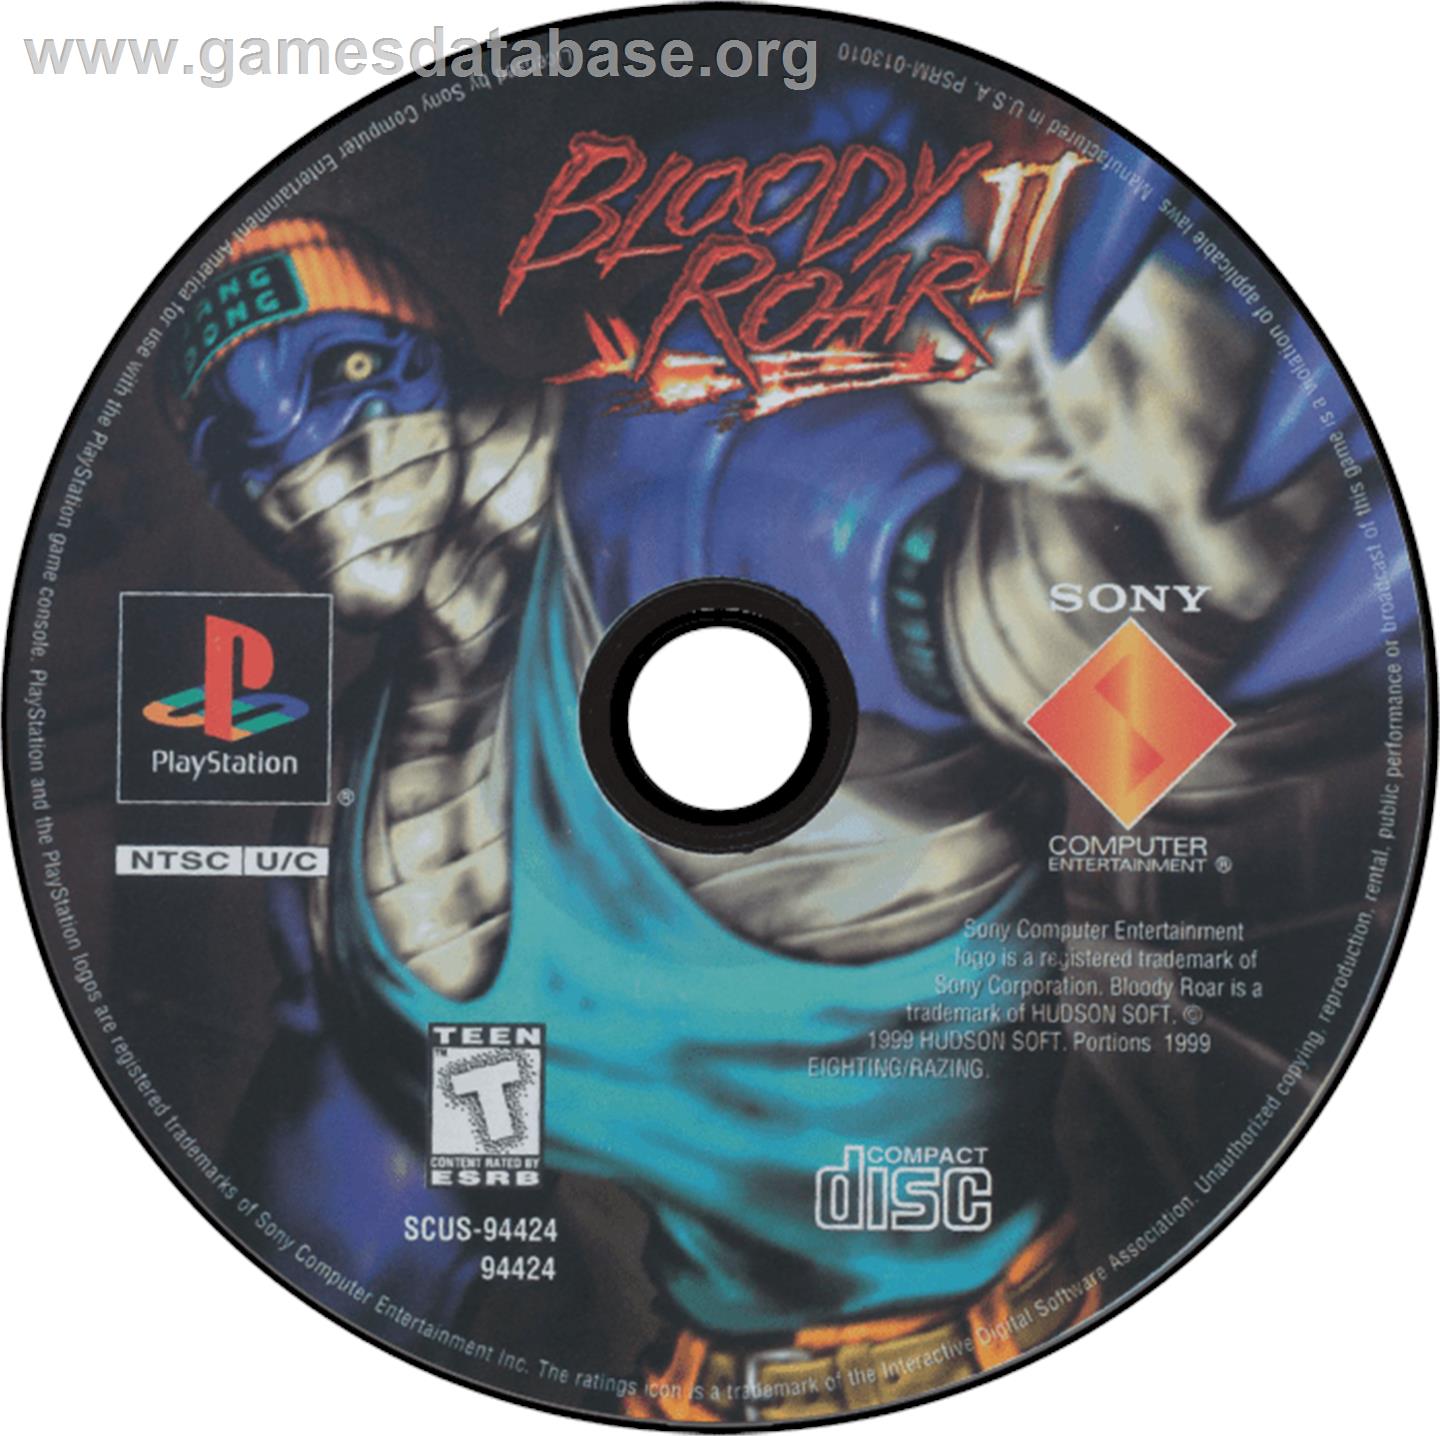 Bloody Roar II - Sony Playstation - Artwork - Disc